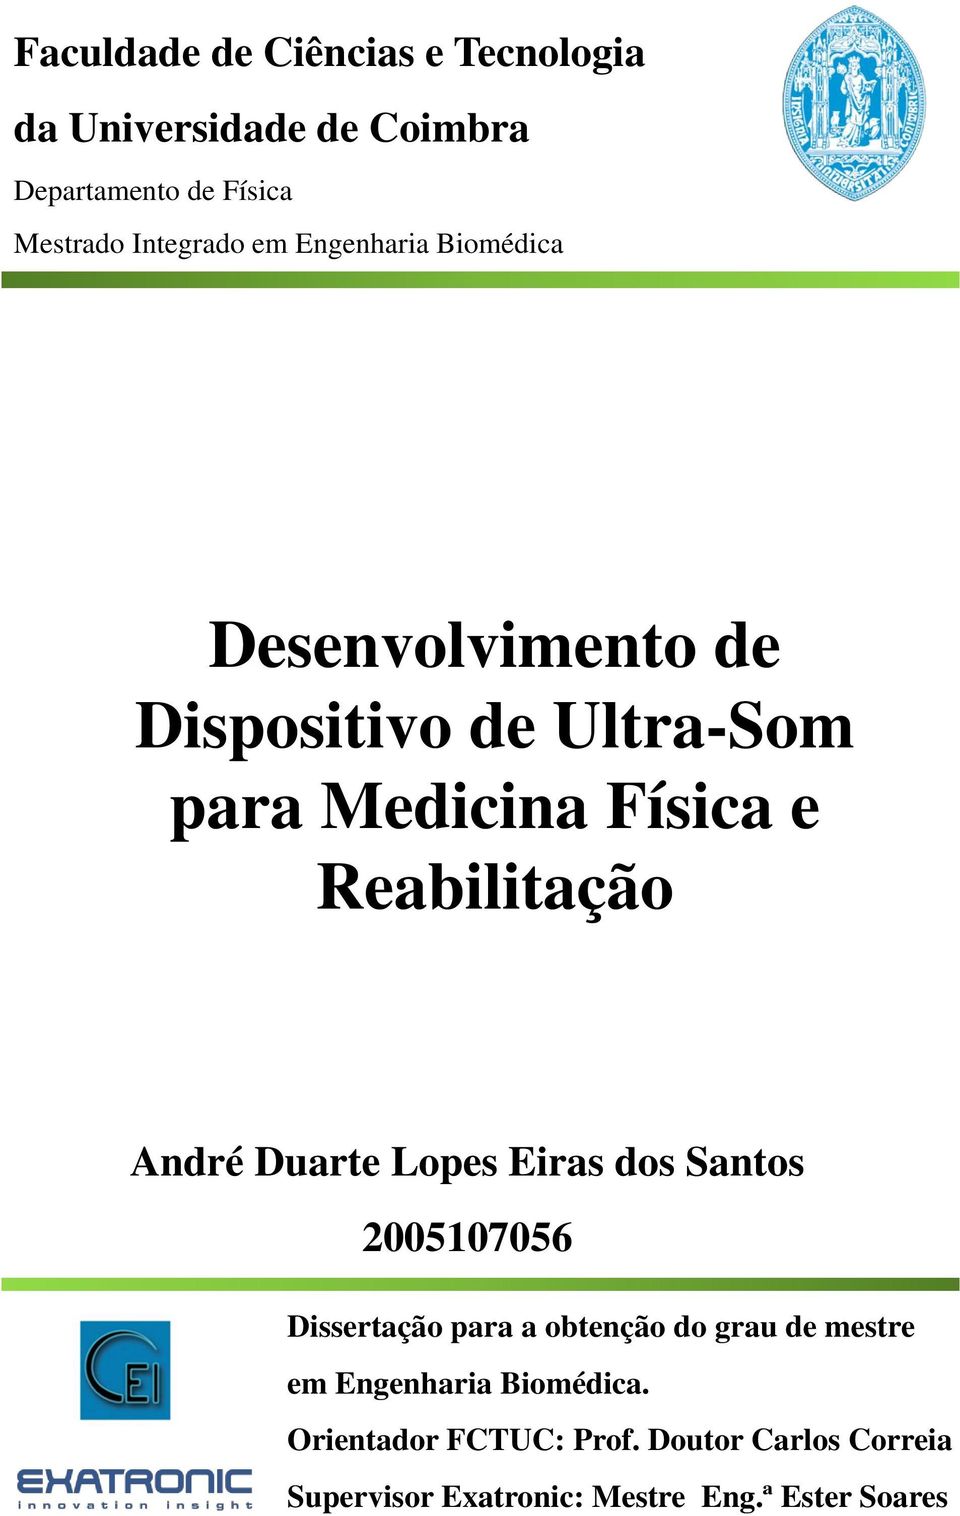 André Duarte Lopes Eiras dos Santos 2005107056 Dissertação para a obtenção do grau de mestre em